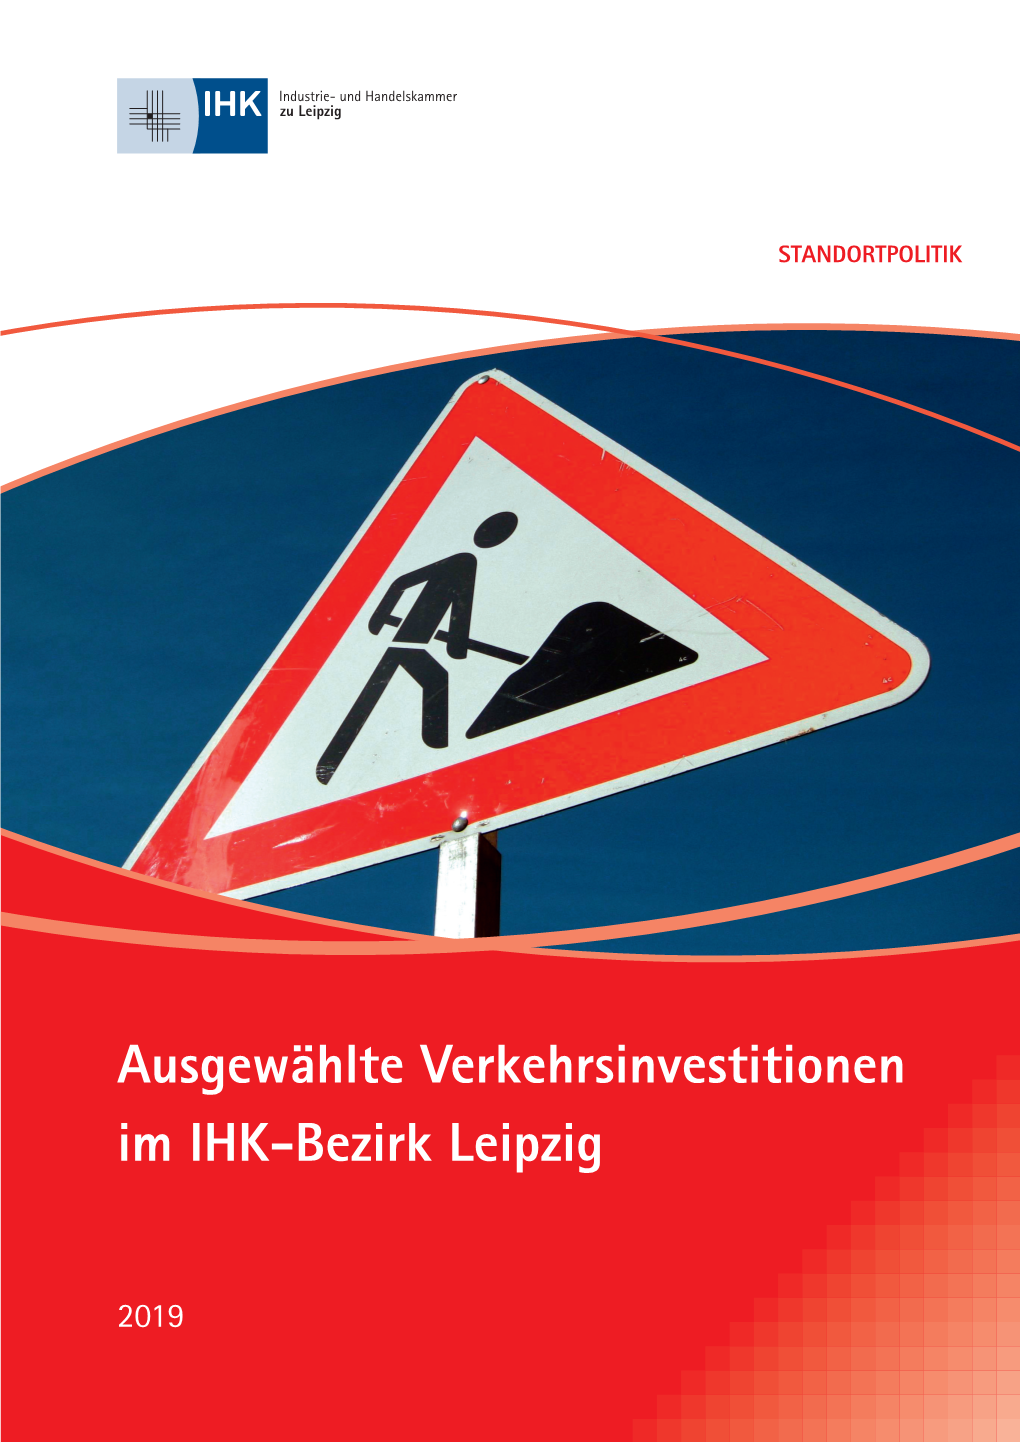 Ausgewählte Verkehrsinvestitionen Im IHK-Bezirk Leipzig